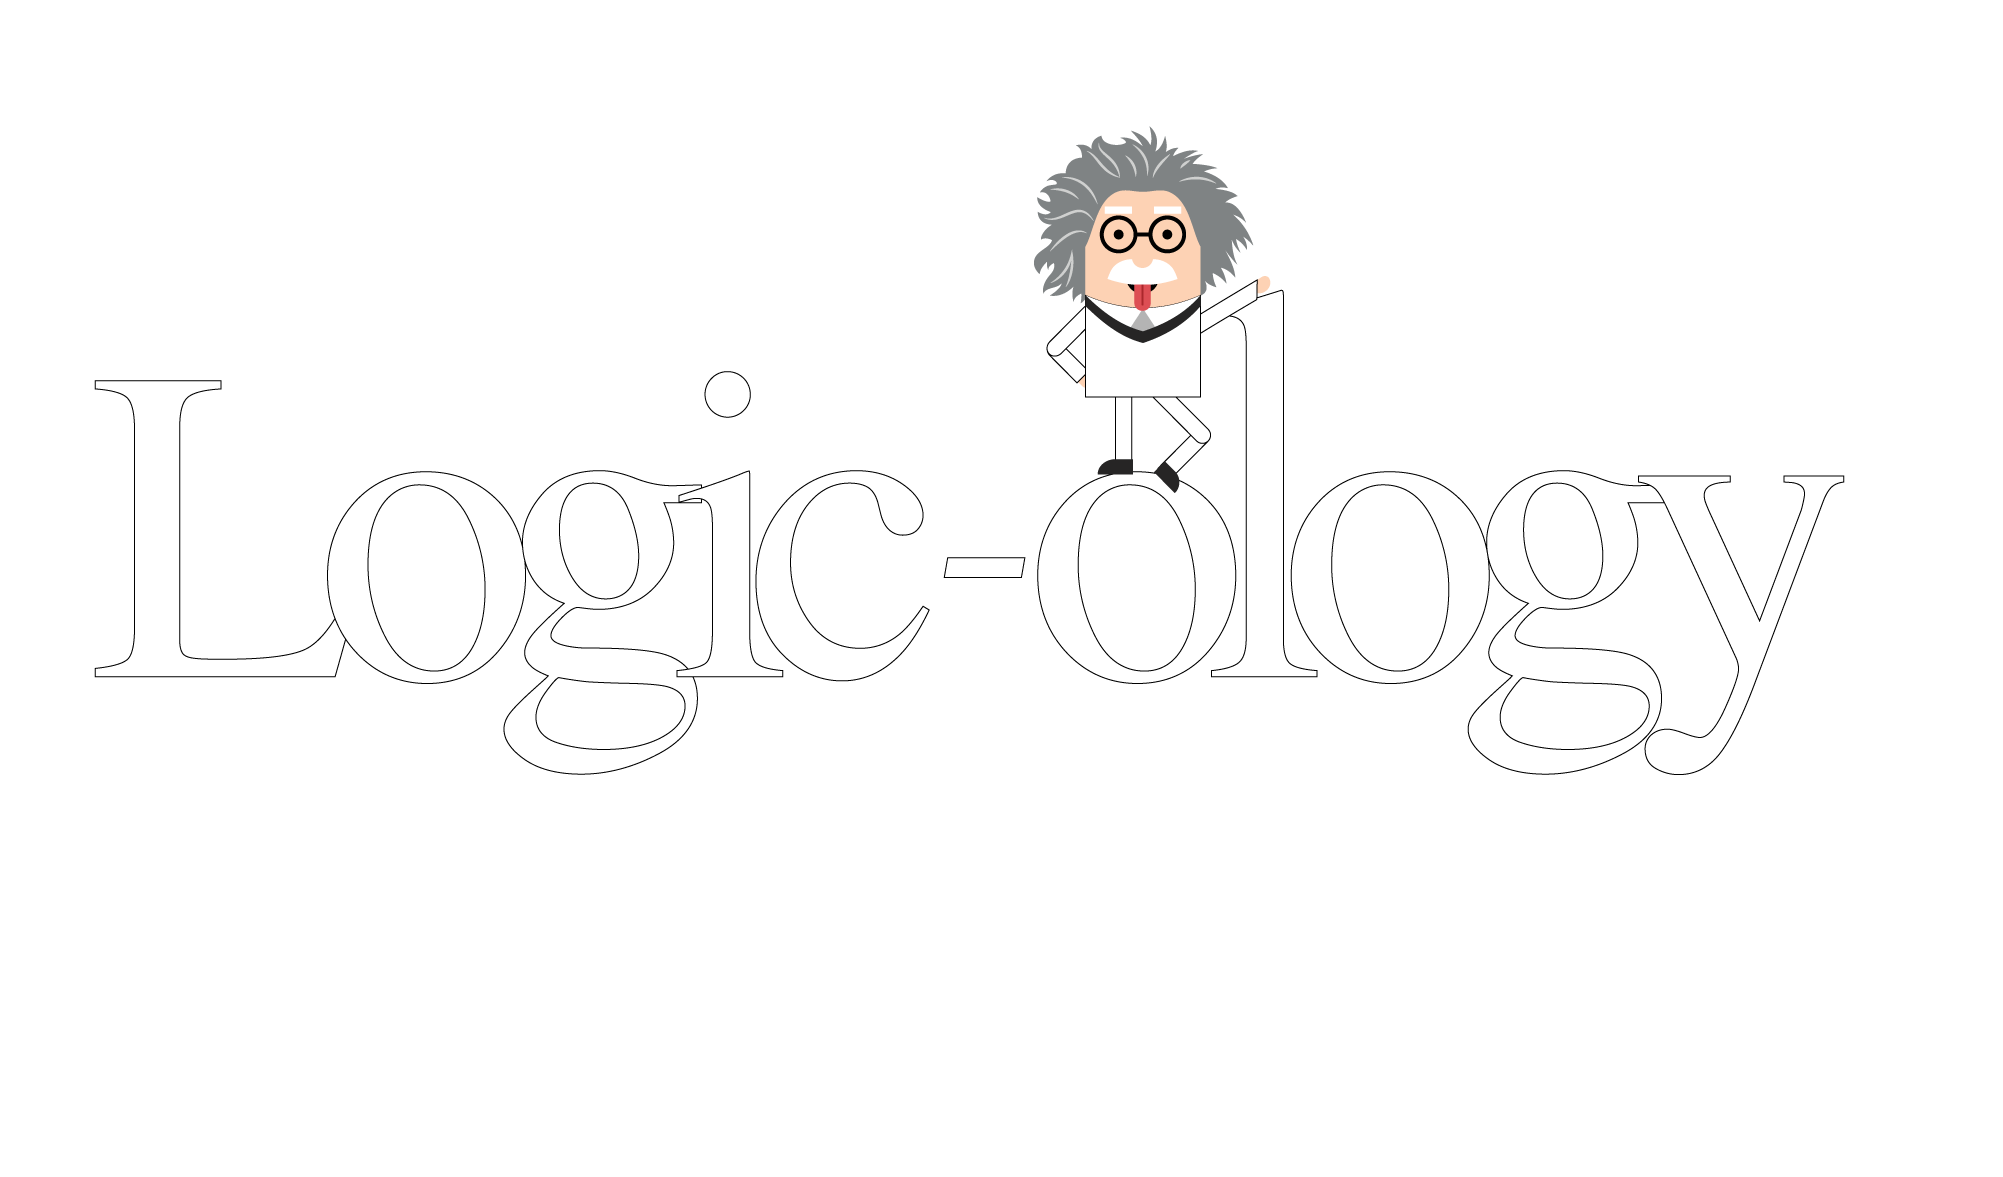 Logistics division